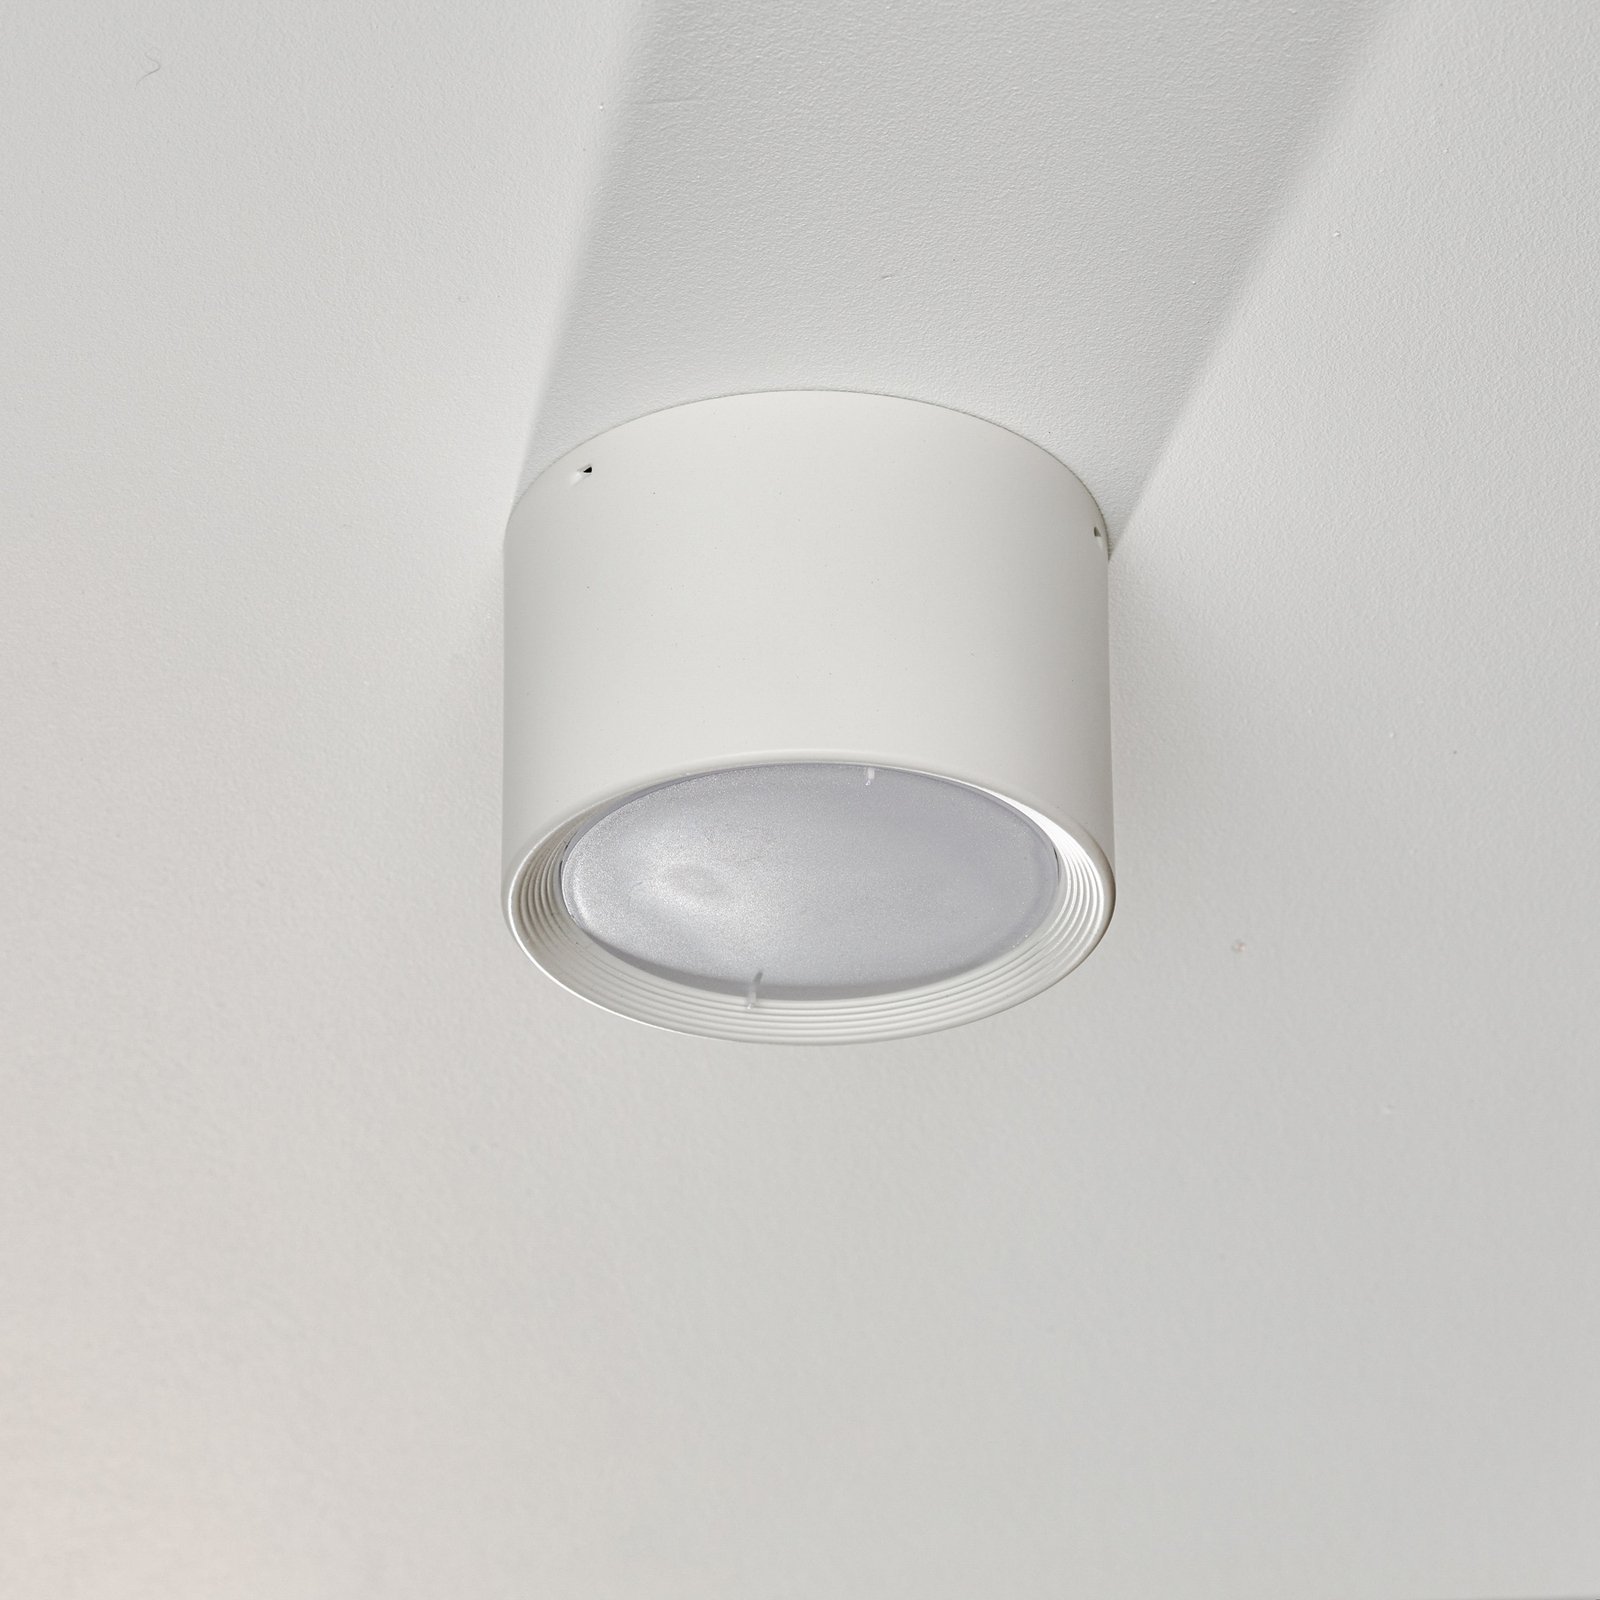 Ita LED-downlight i vitt med kupa, Ø 12 cm